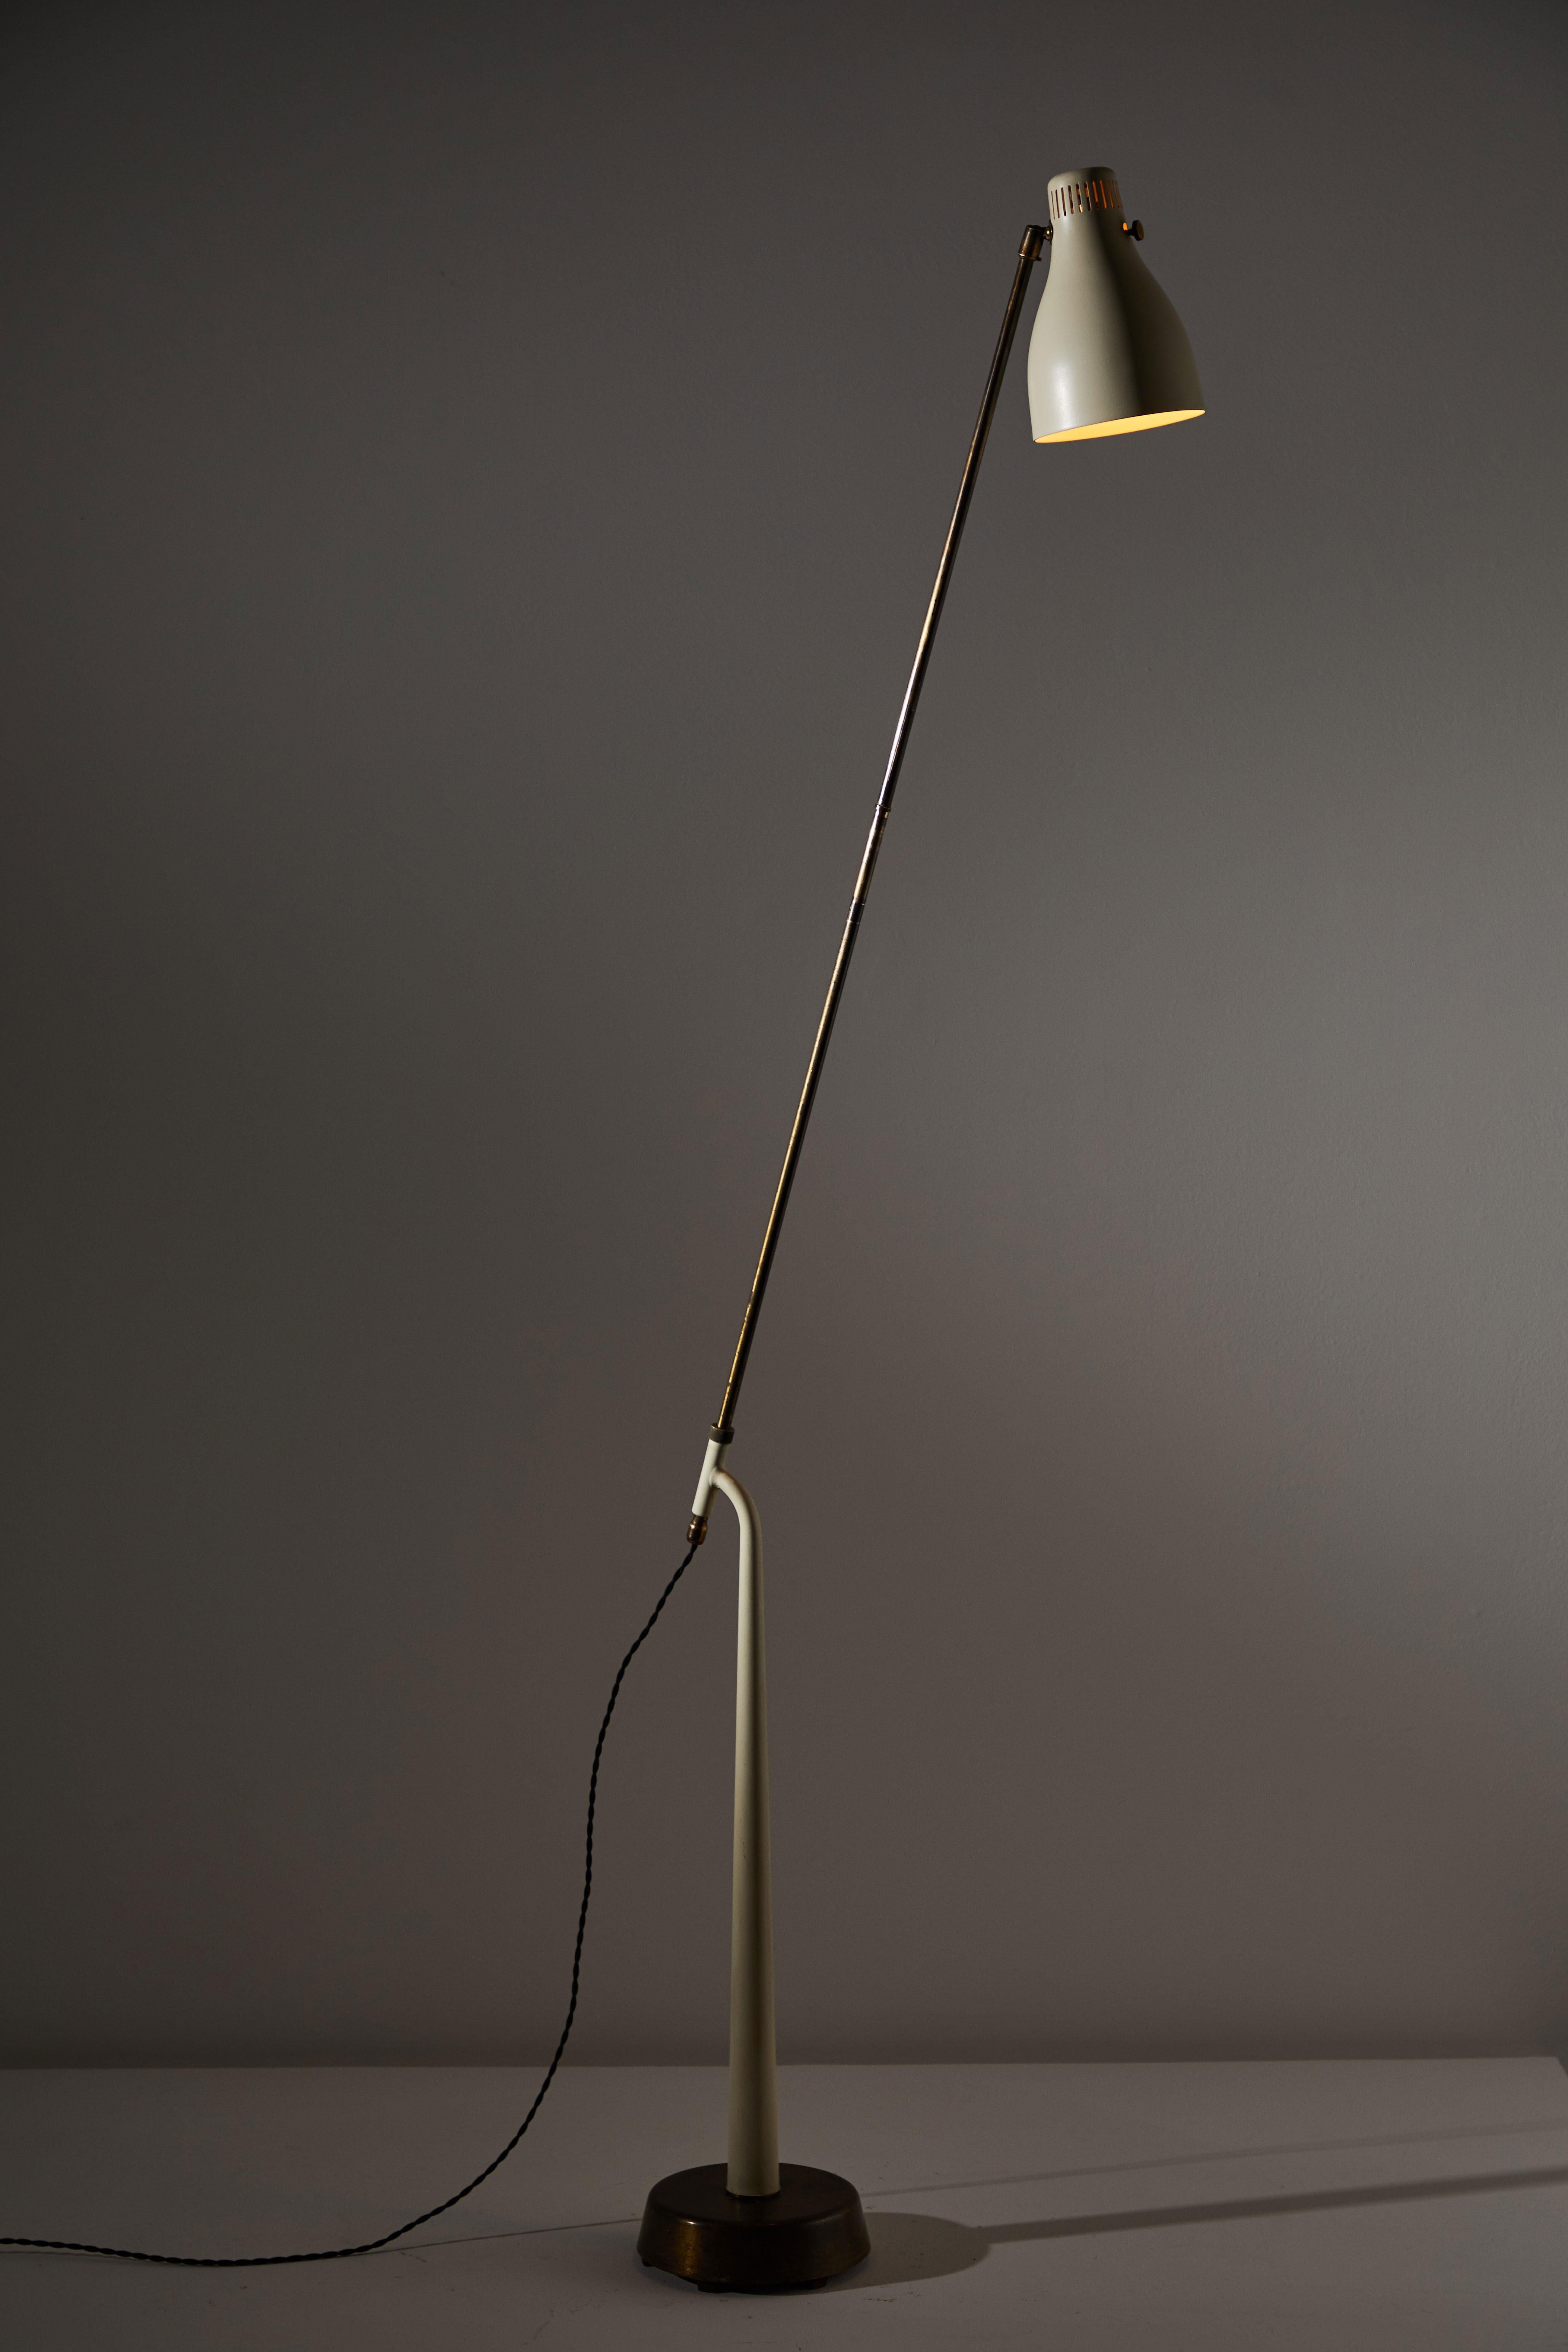 Enameled Rare Model 541 Floor Lamp by Hans Bergstrom for Atelje Lyktan